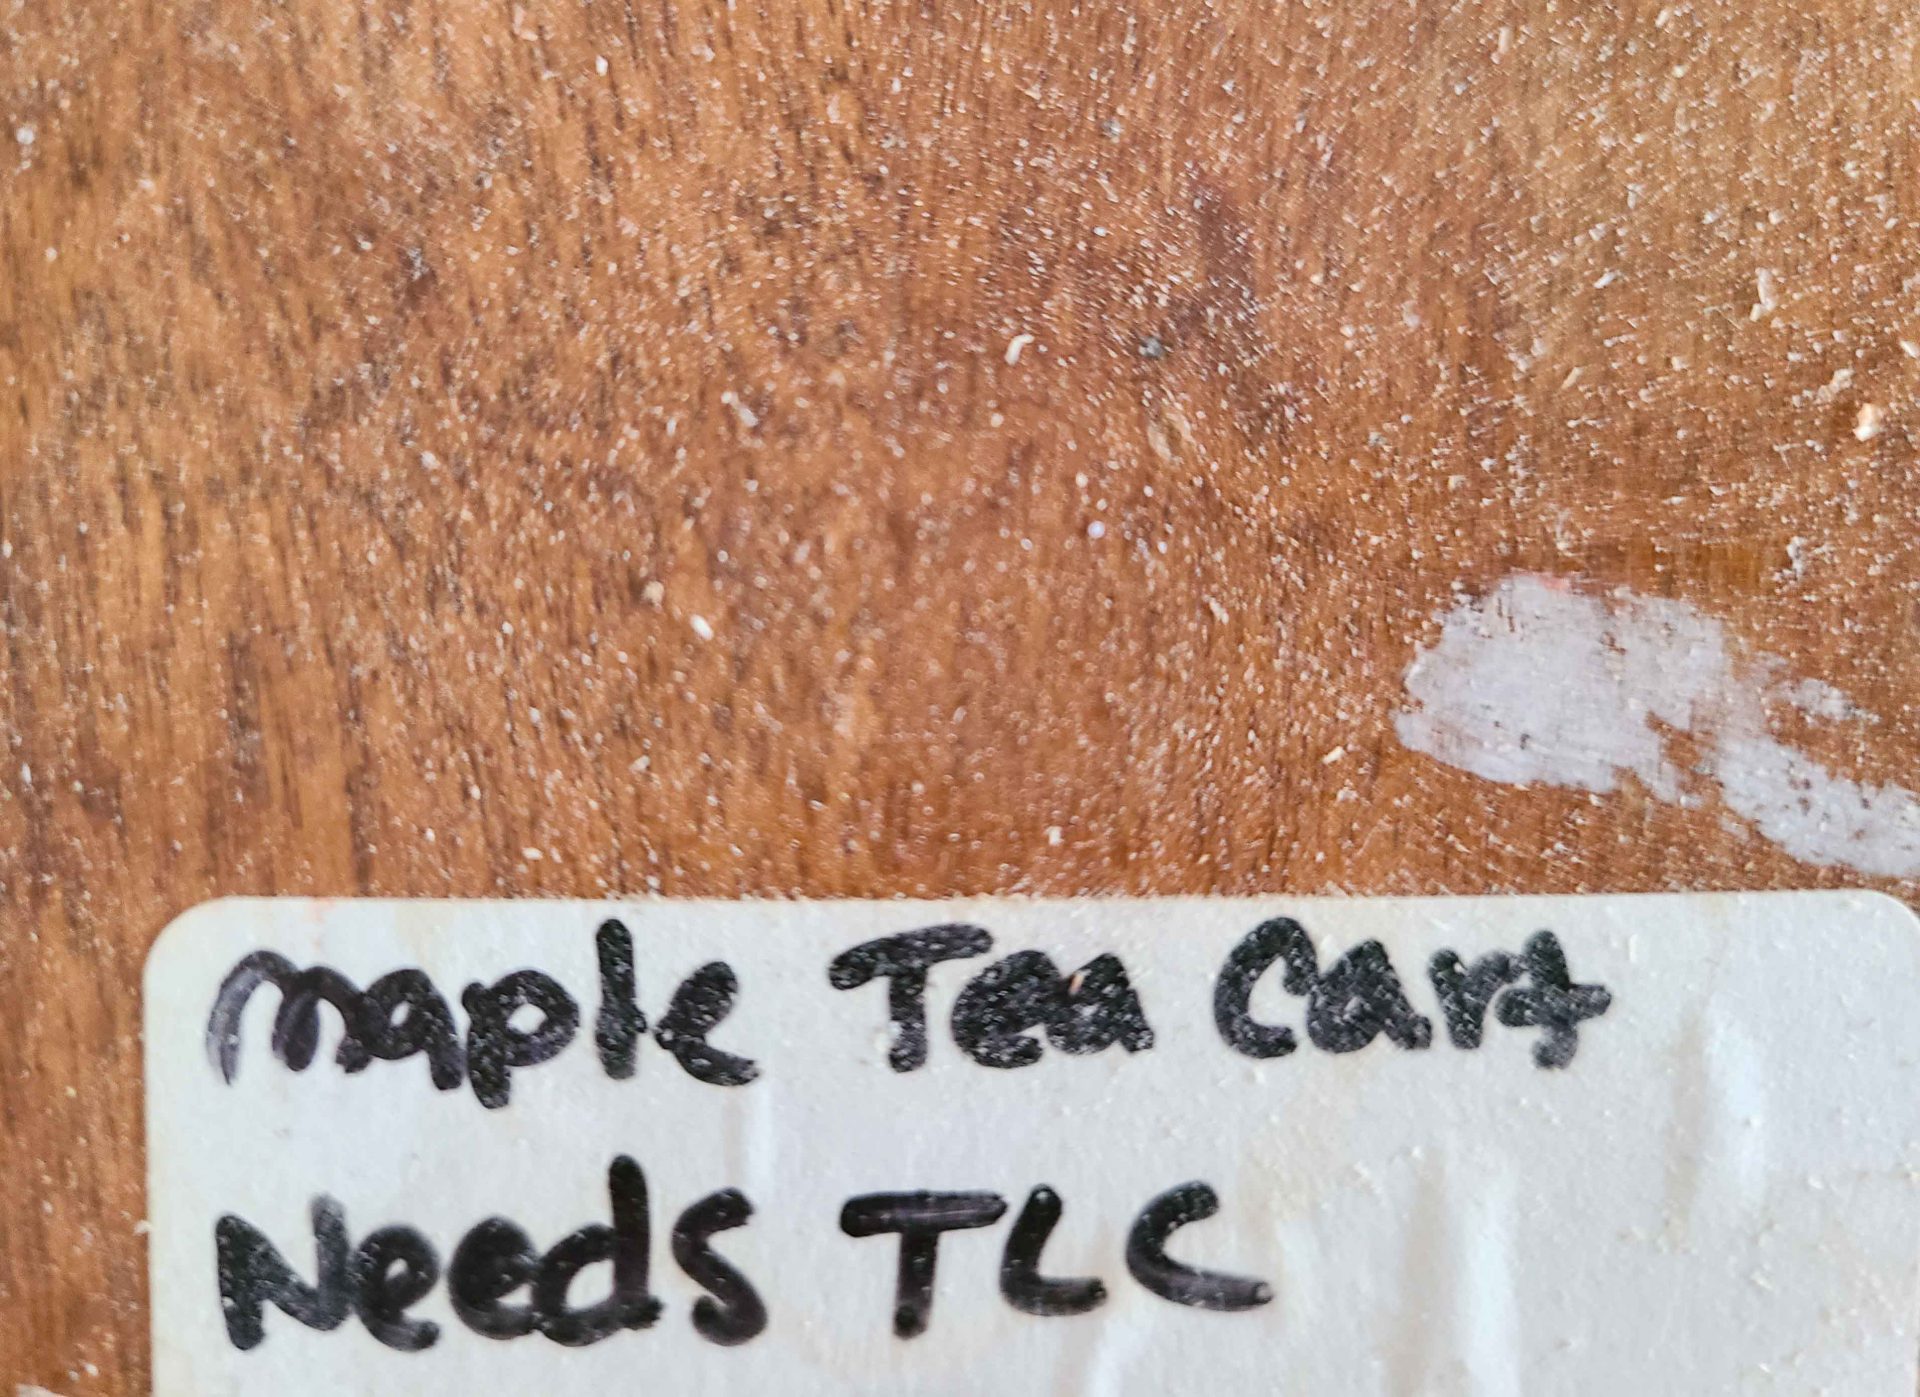 Broken Tea Cart Price Sticker | prodigalpieces.com #prodigalpieces